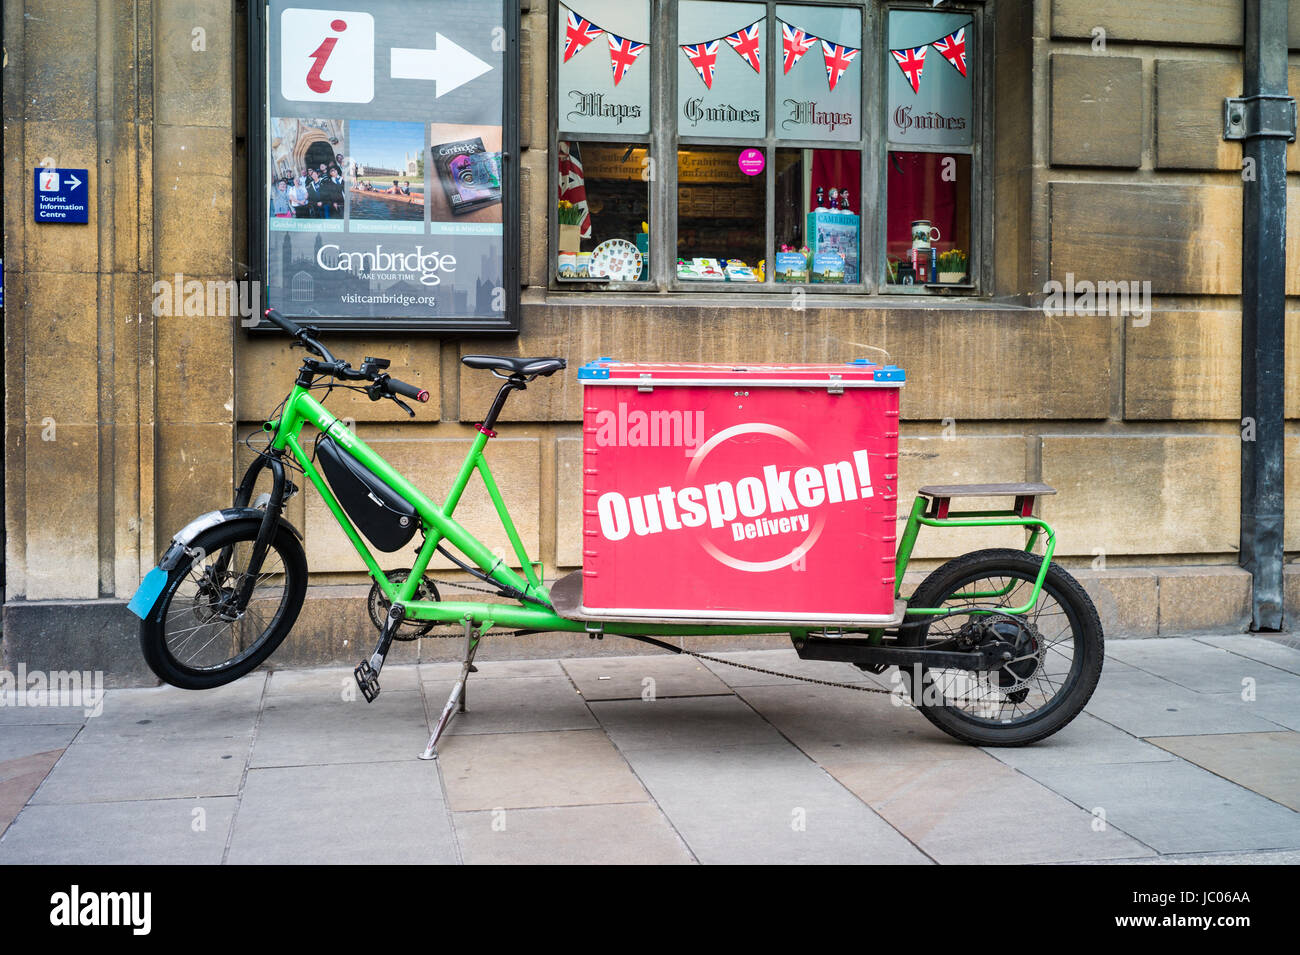 Un cargo bike appartenenti al espliciti ultimo miglio società di consegna parcheggiato nel centro storico di Cambridge Regno Unito. Foto Stock